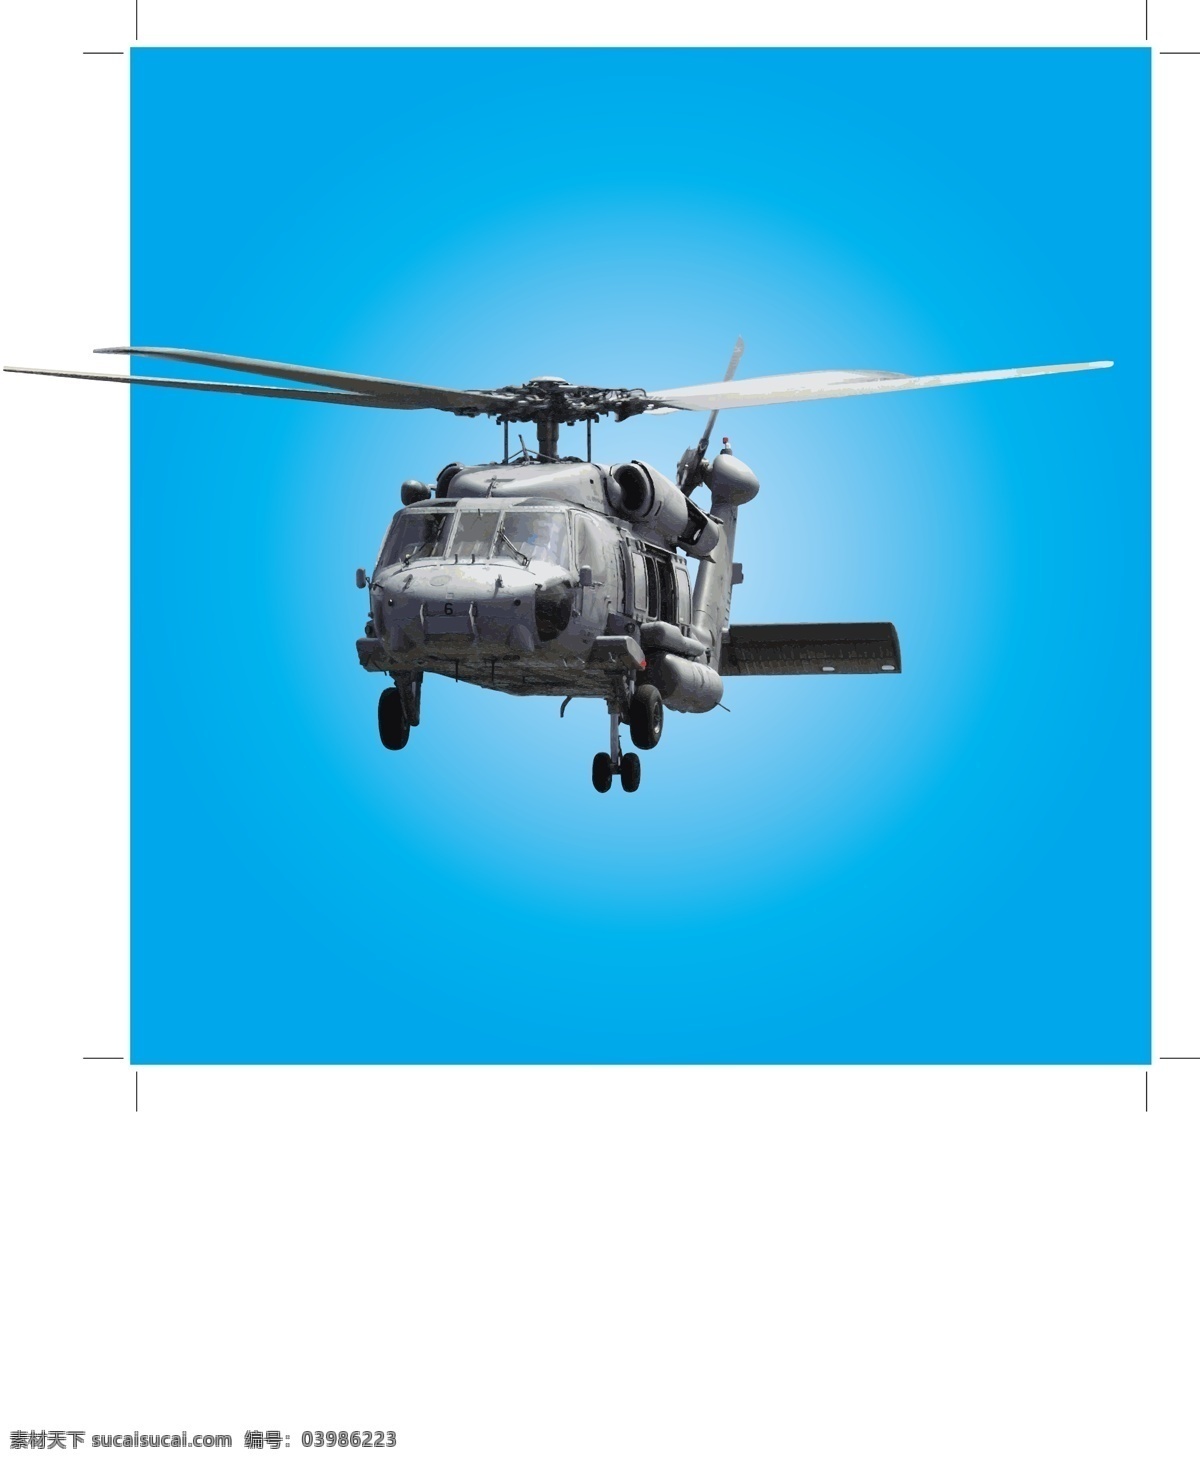 陆军 直升机 军队 空军 战斗 战争 突击 攻击 黑鹰 海军陆战队 军事的 我们的军队 矢量图 其他矢量图